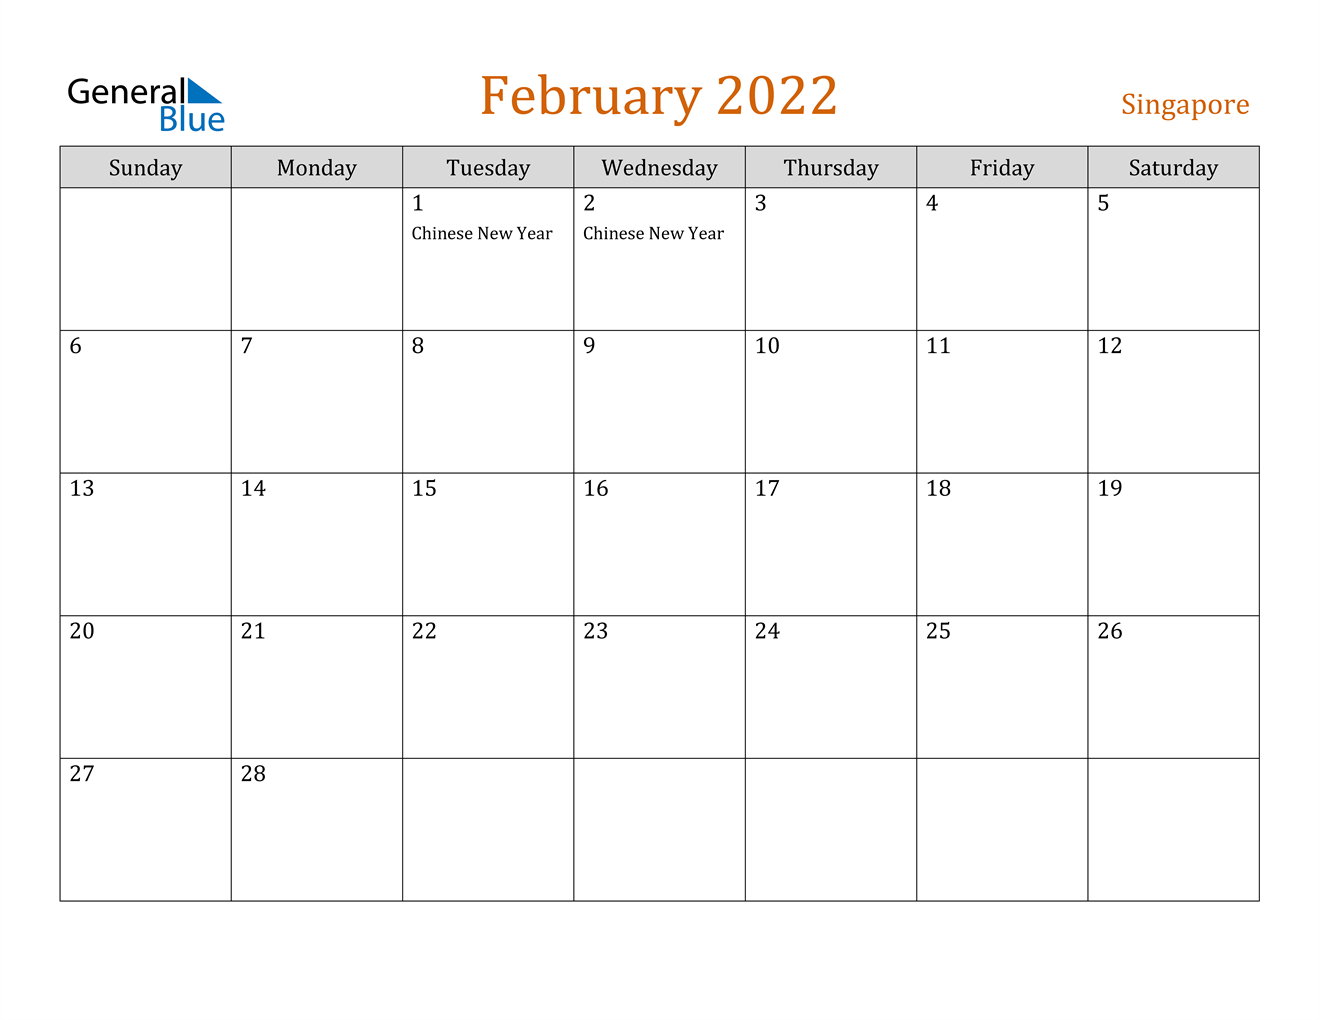 Singapore February 2022 Calendar With Holidays